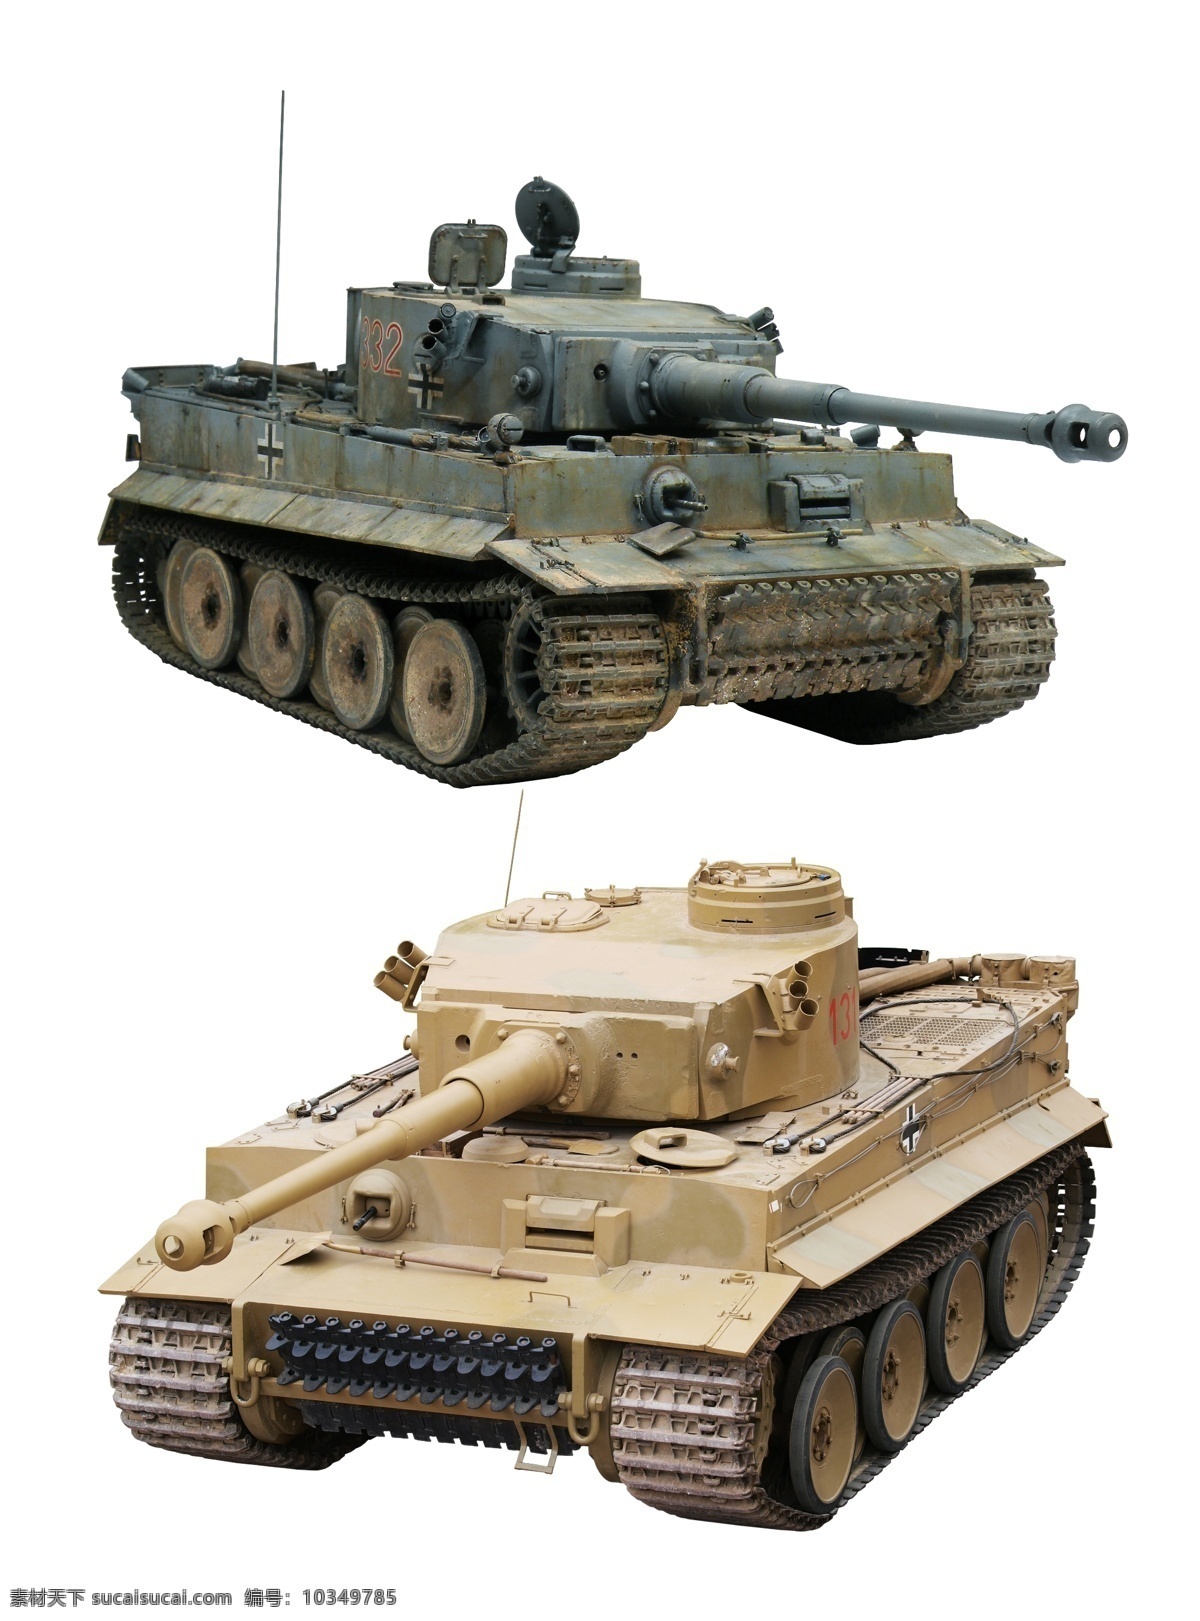 虎式坦克 二战 德国坦克 德军 坦克 装甲车 虎1 库尔斯克会战 现代科技 军事武器 分层